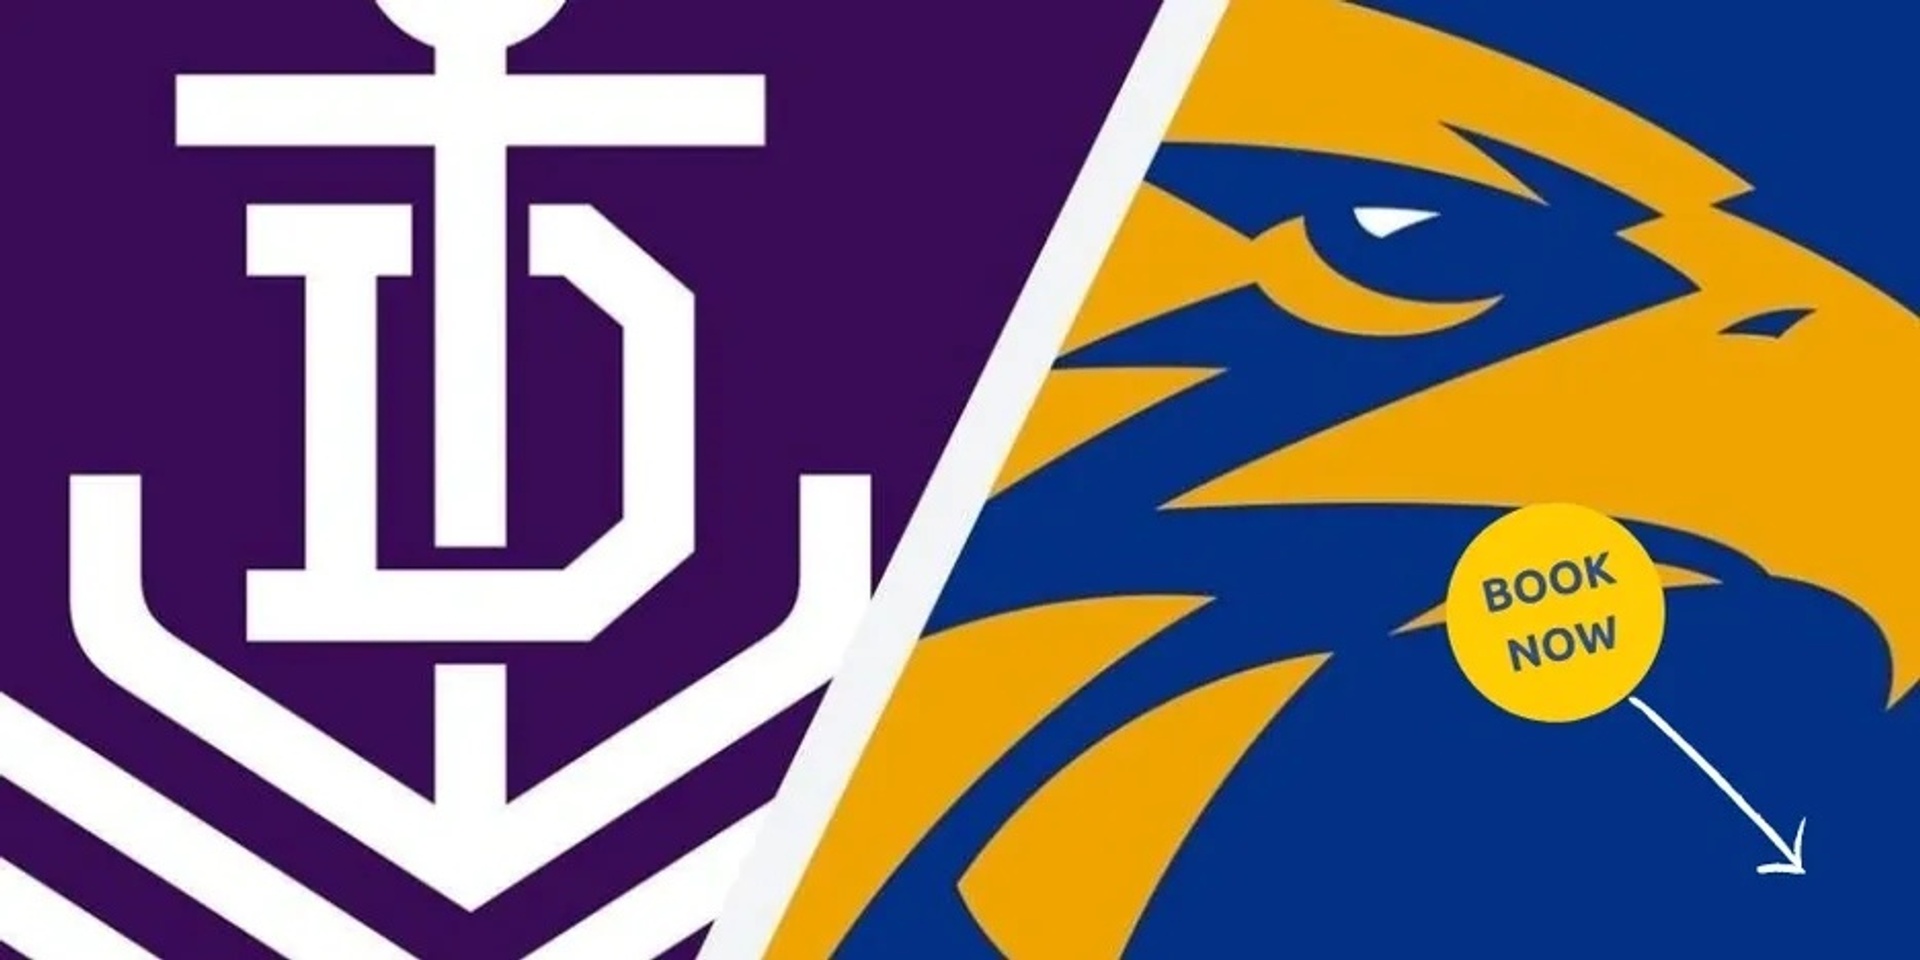 AFL - Fremantle Dockers vs West Coast Eagles (Eagles Supporters)